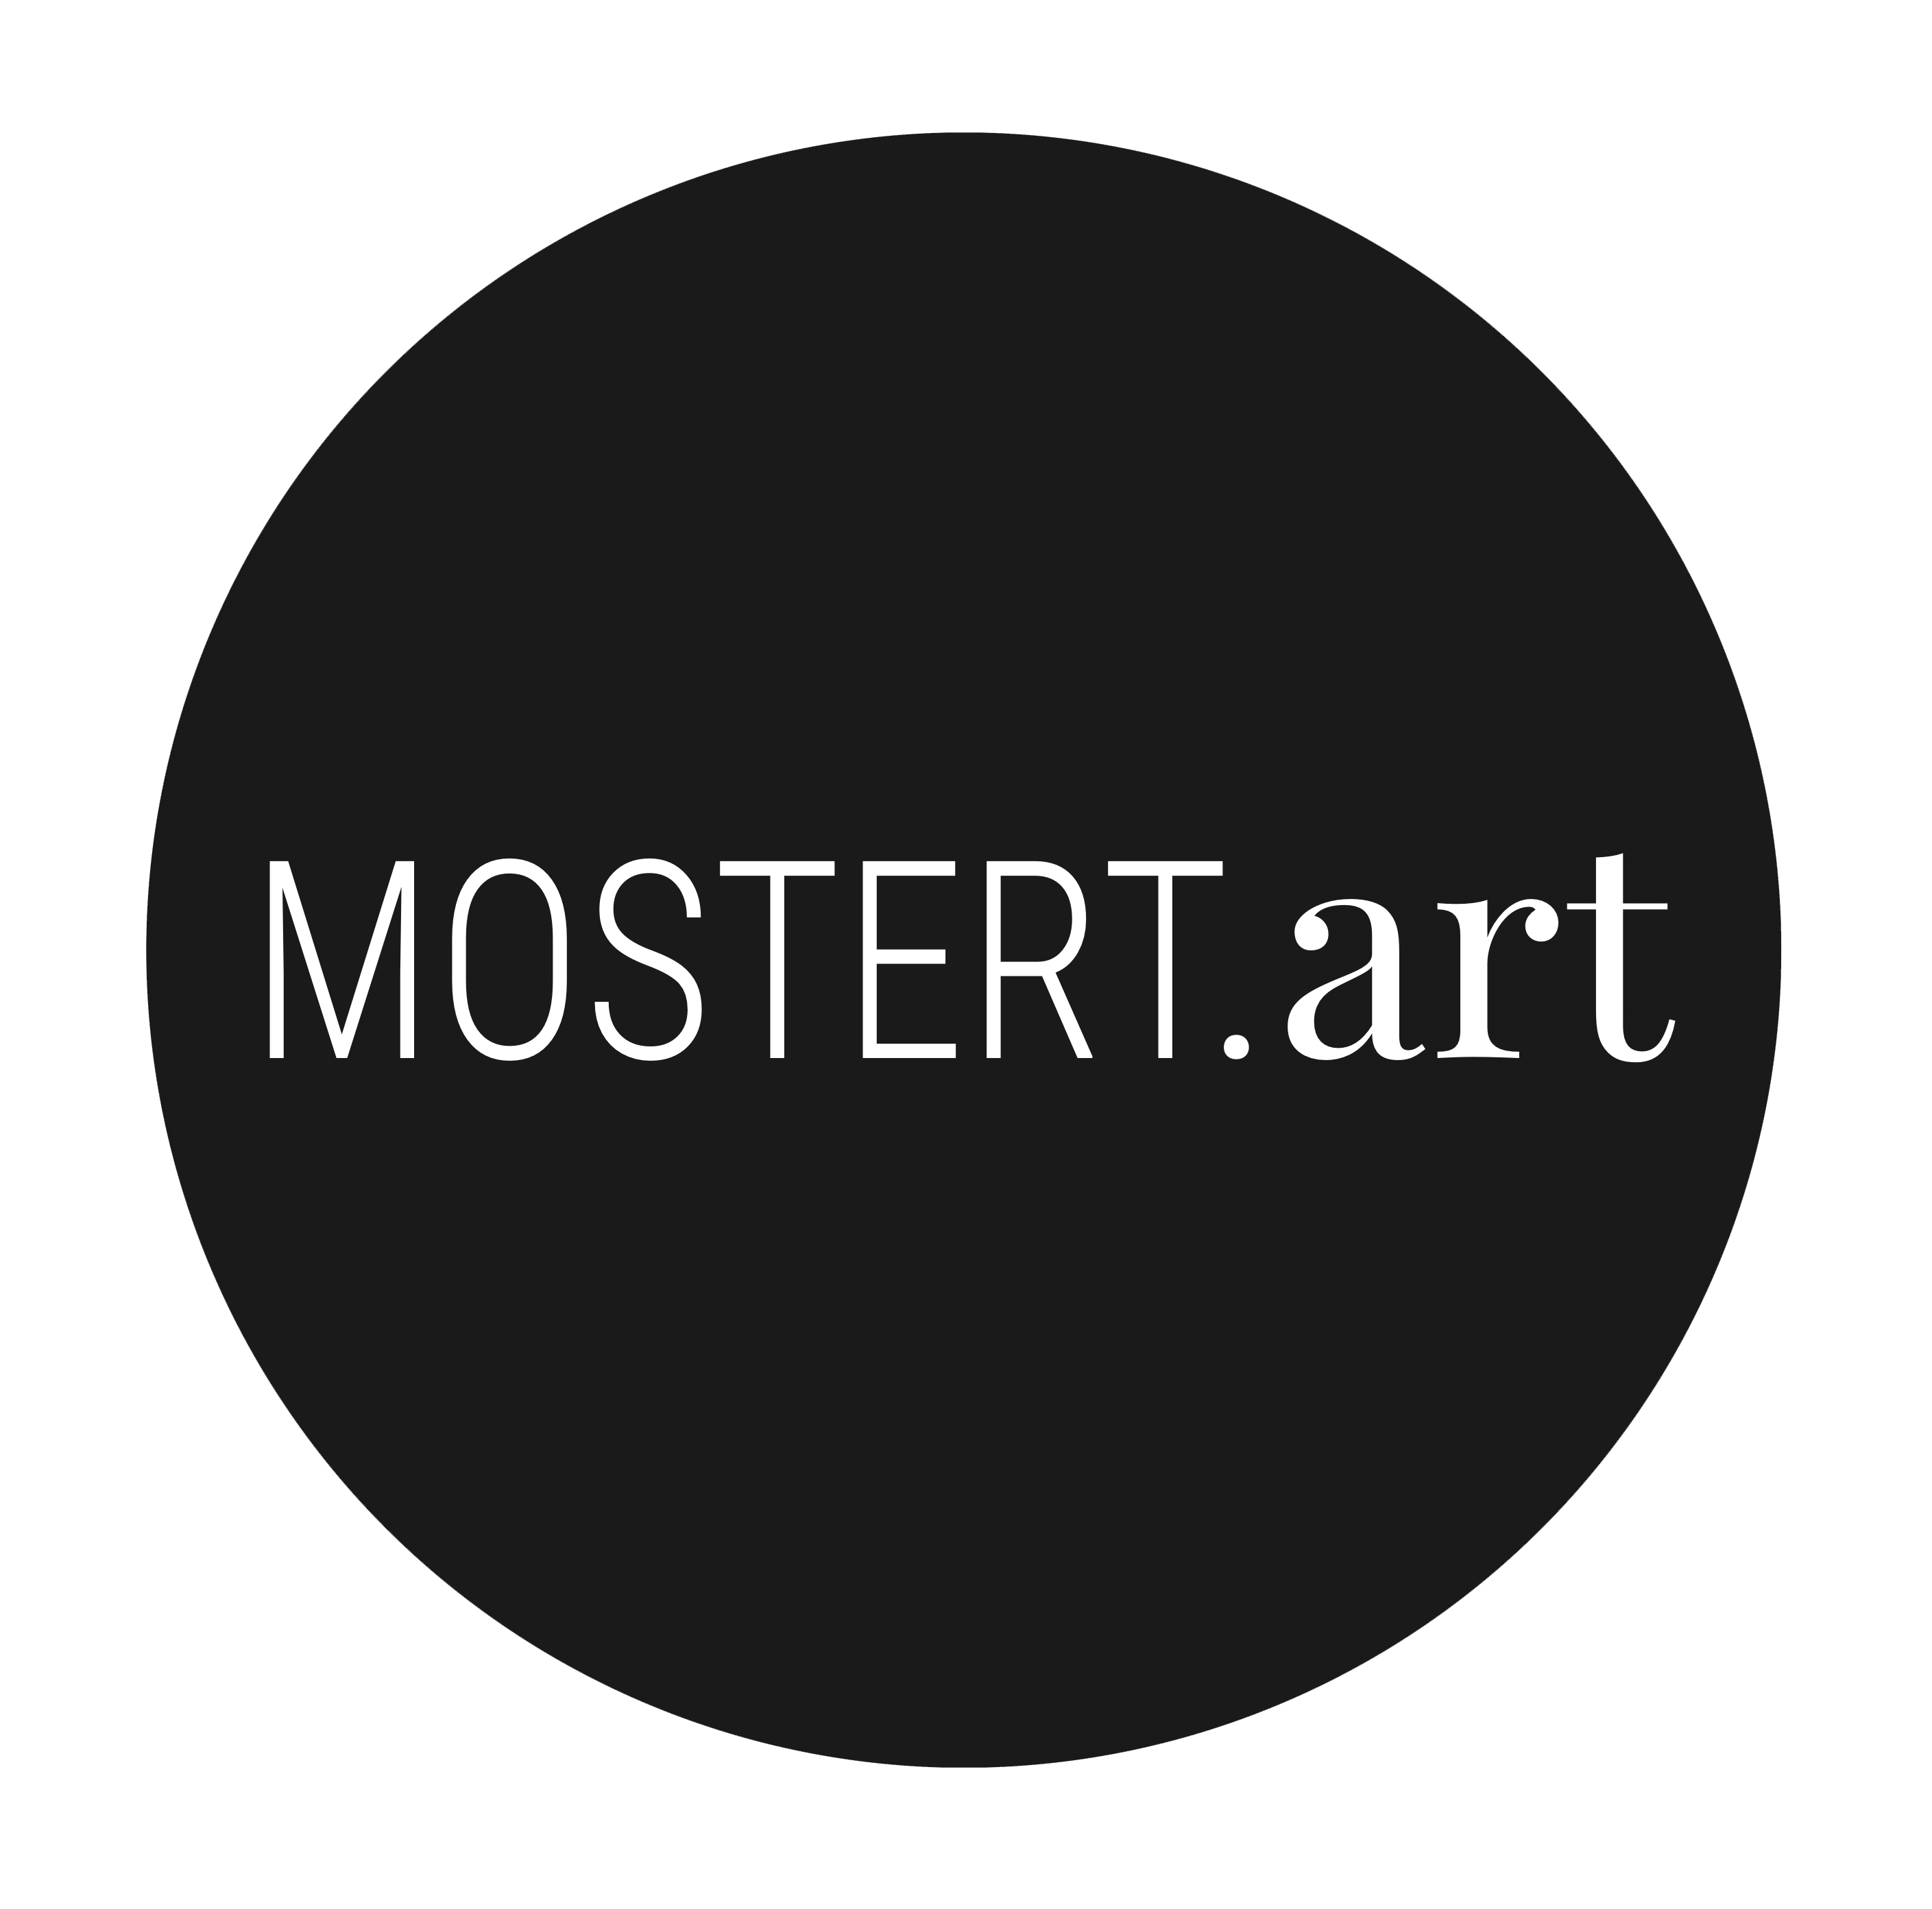 (c) Mostert.art